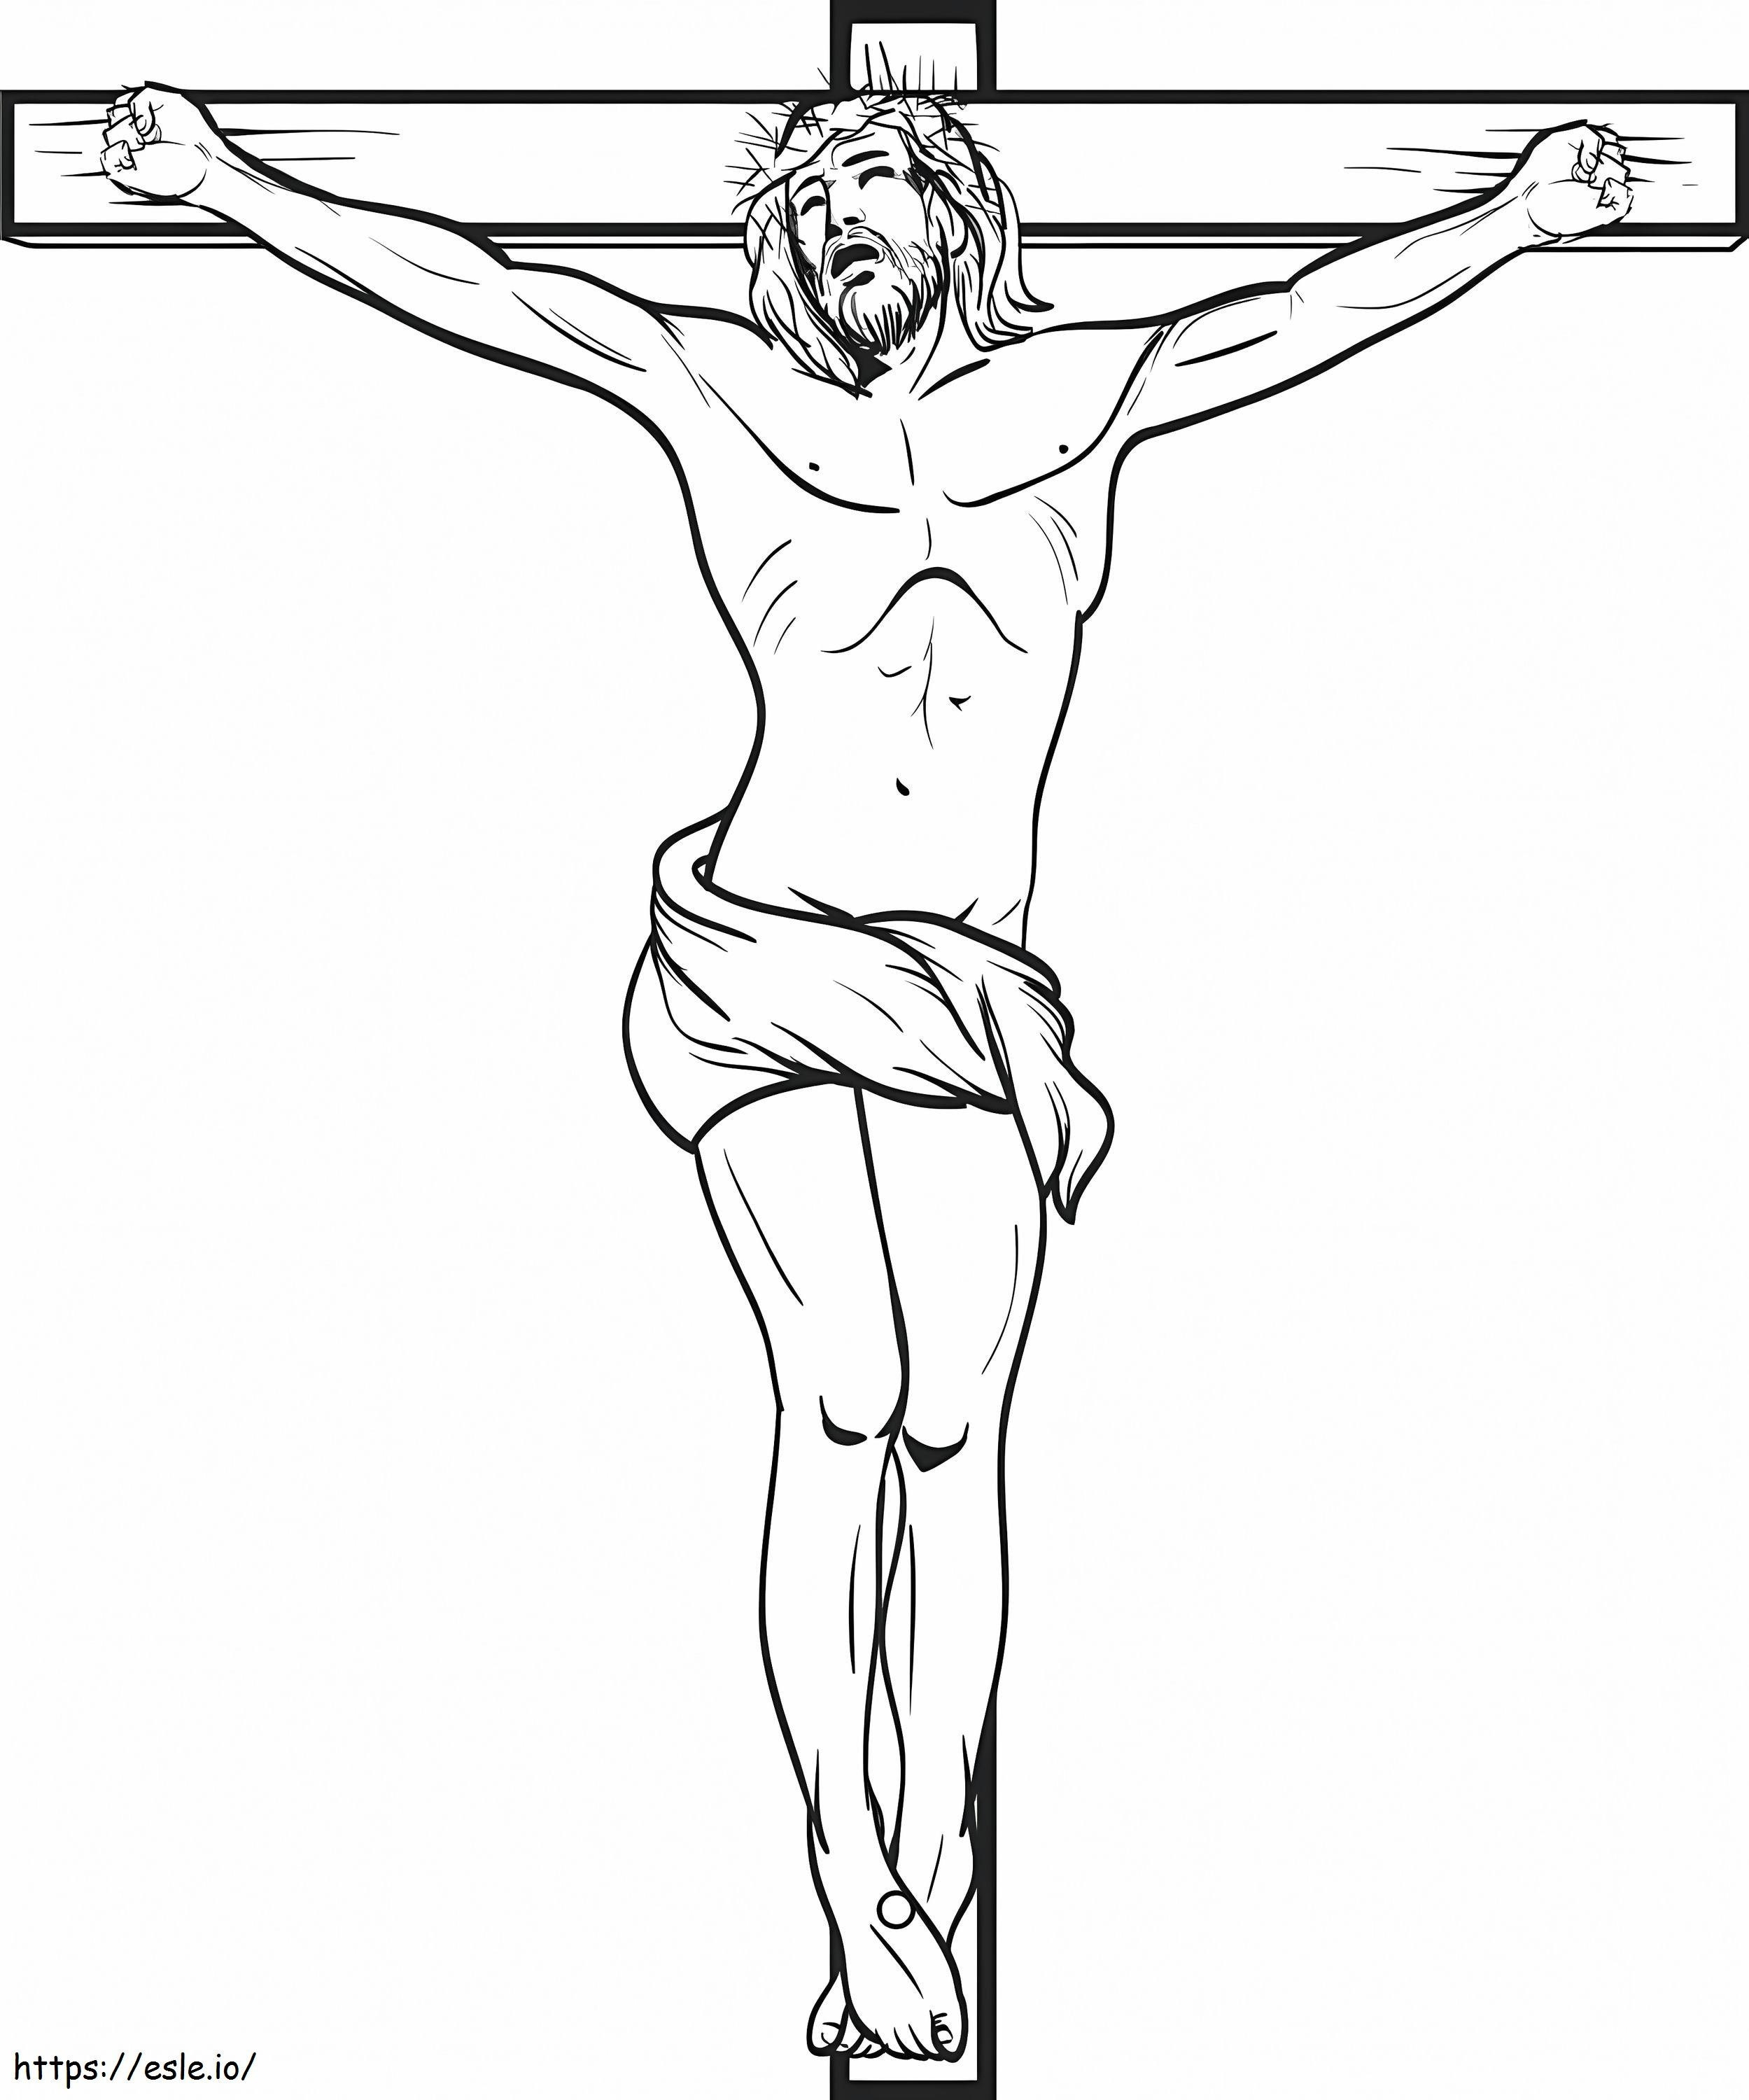 Jezus Chrystus Ukrzyżowany Na Krzyżu kolorowanka